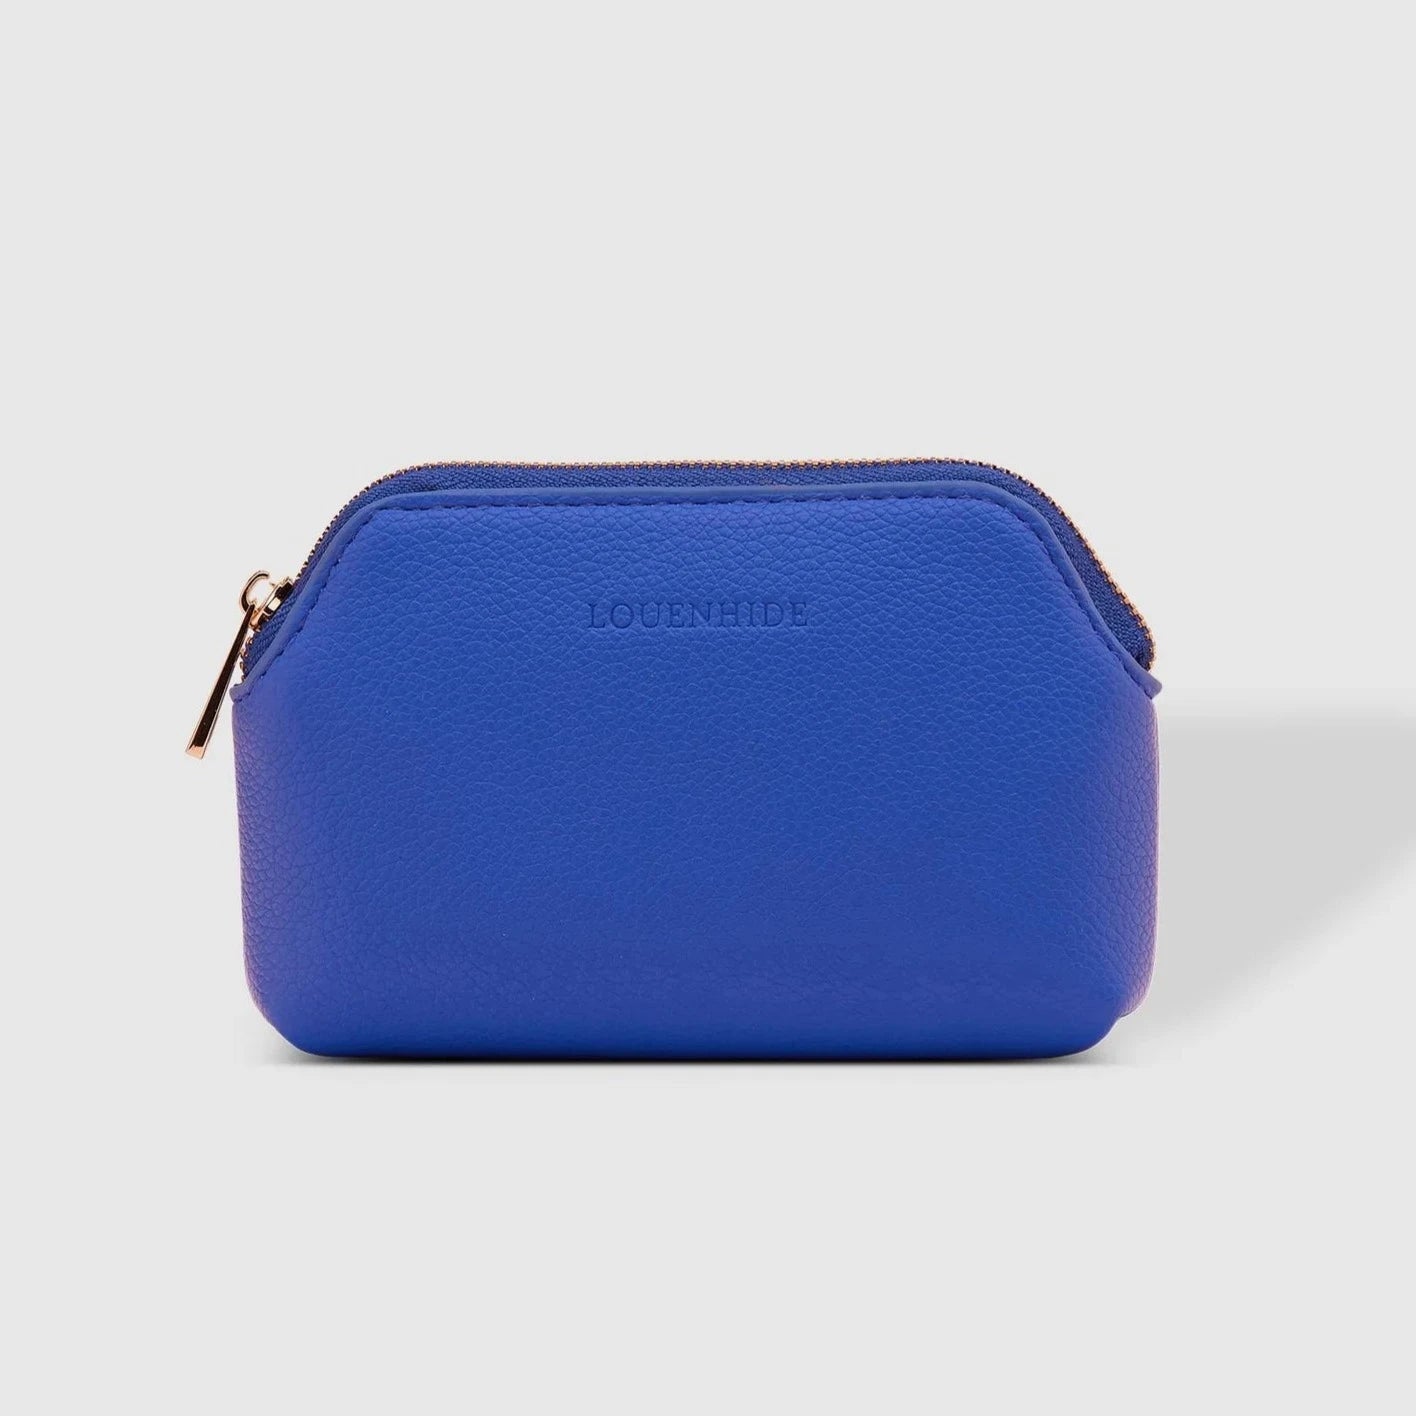 Ruby purse blue